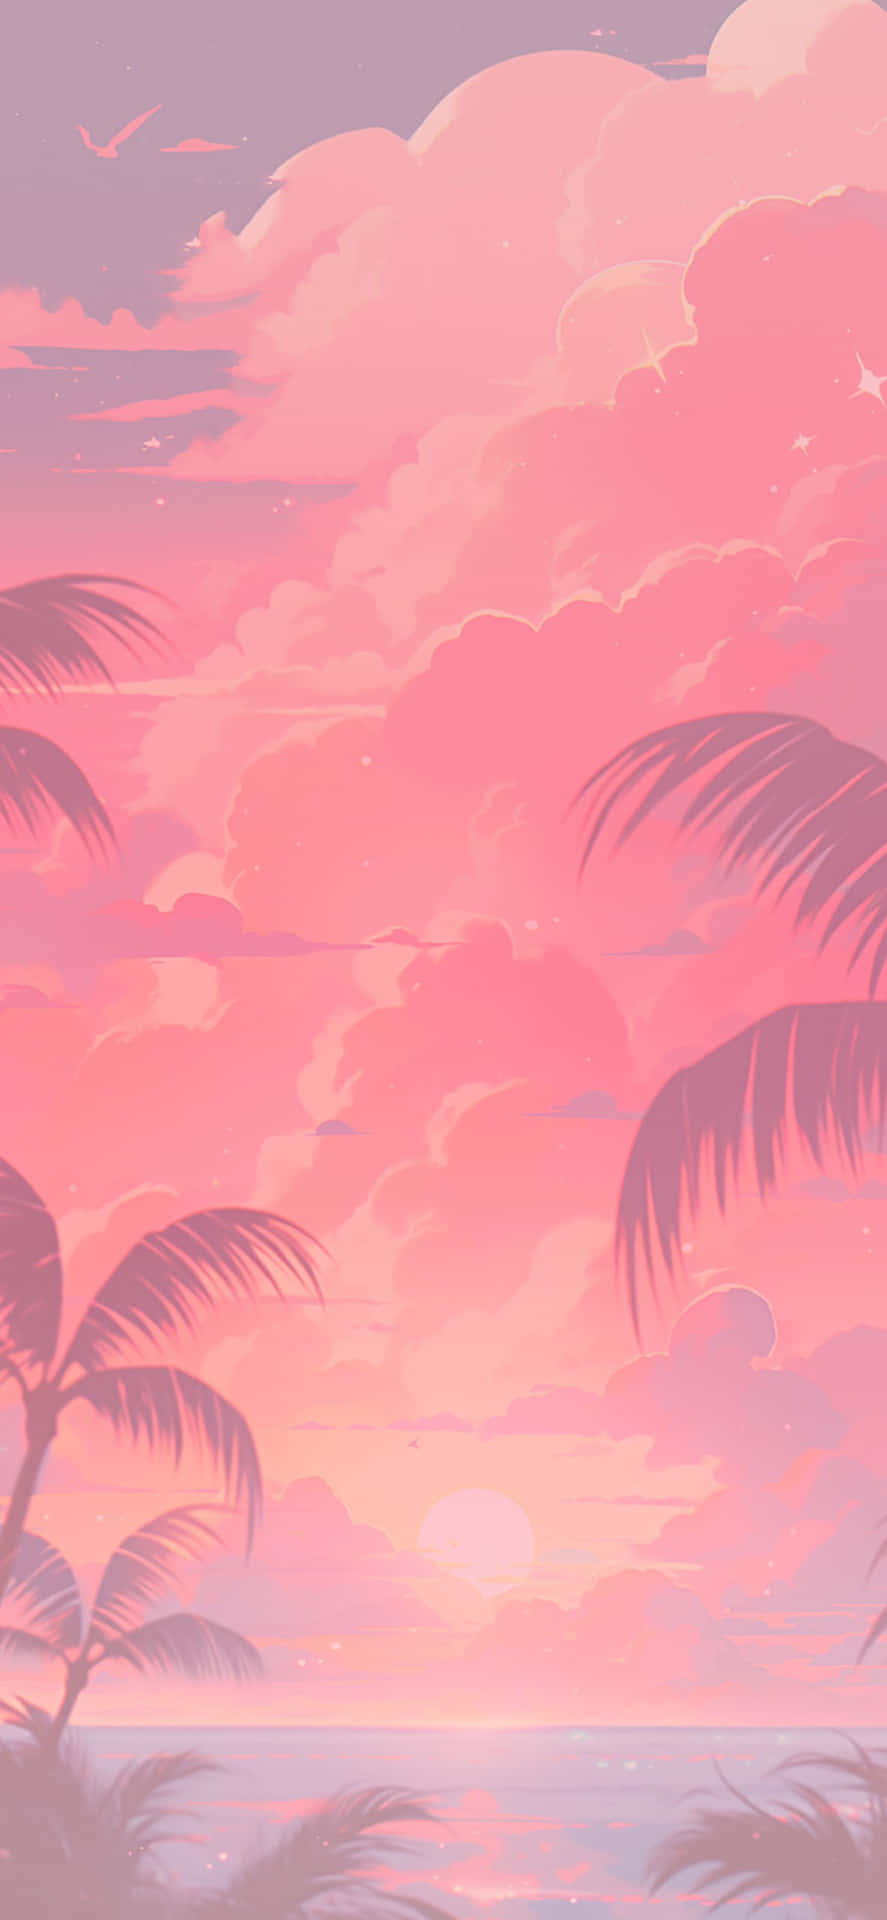 Pink Summer Beach Sunset Aesthetic.jpg Wallpaper